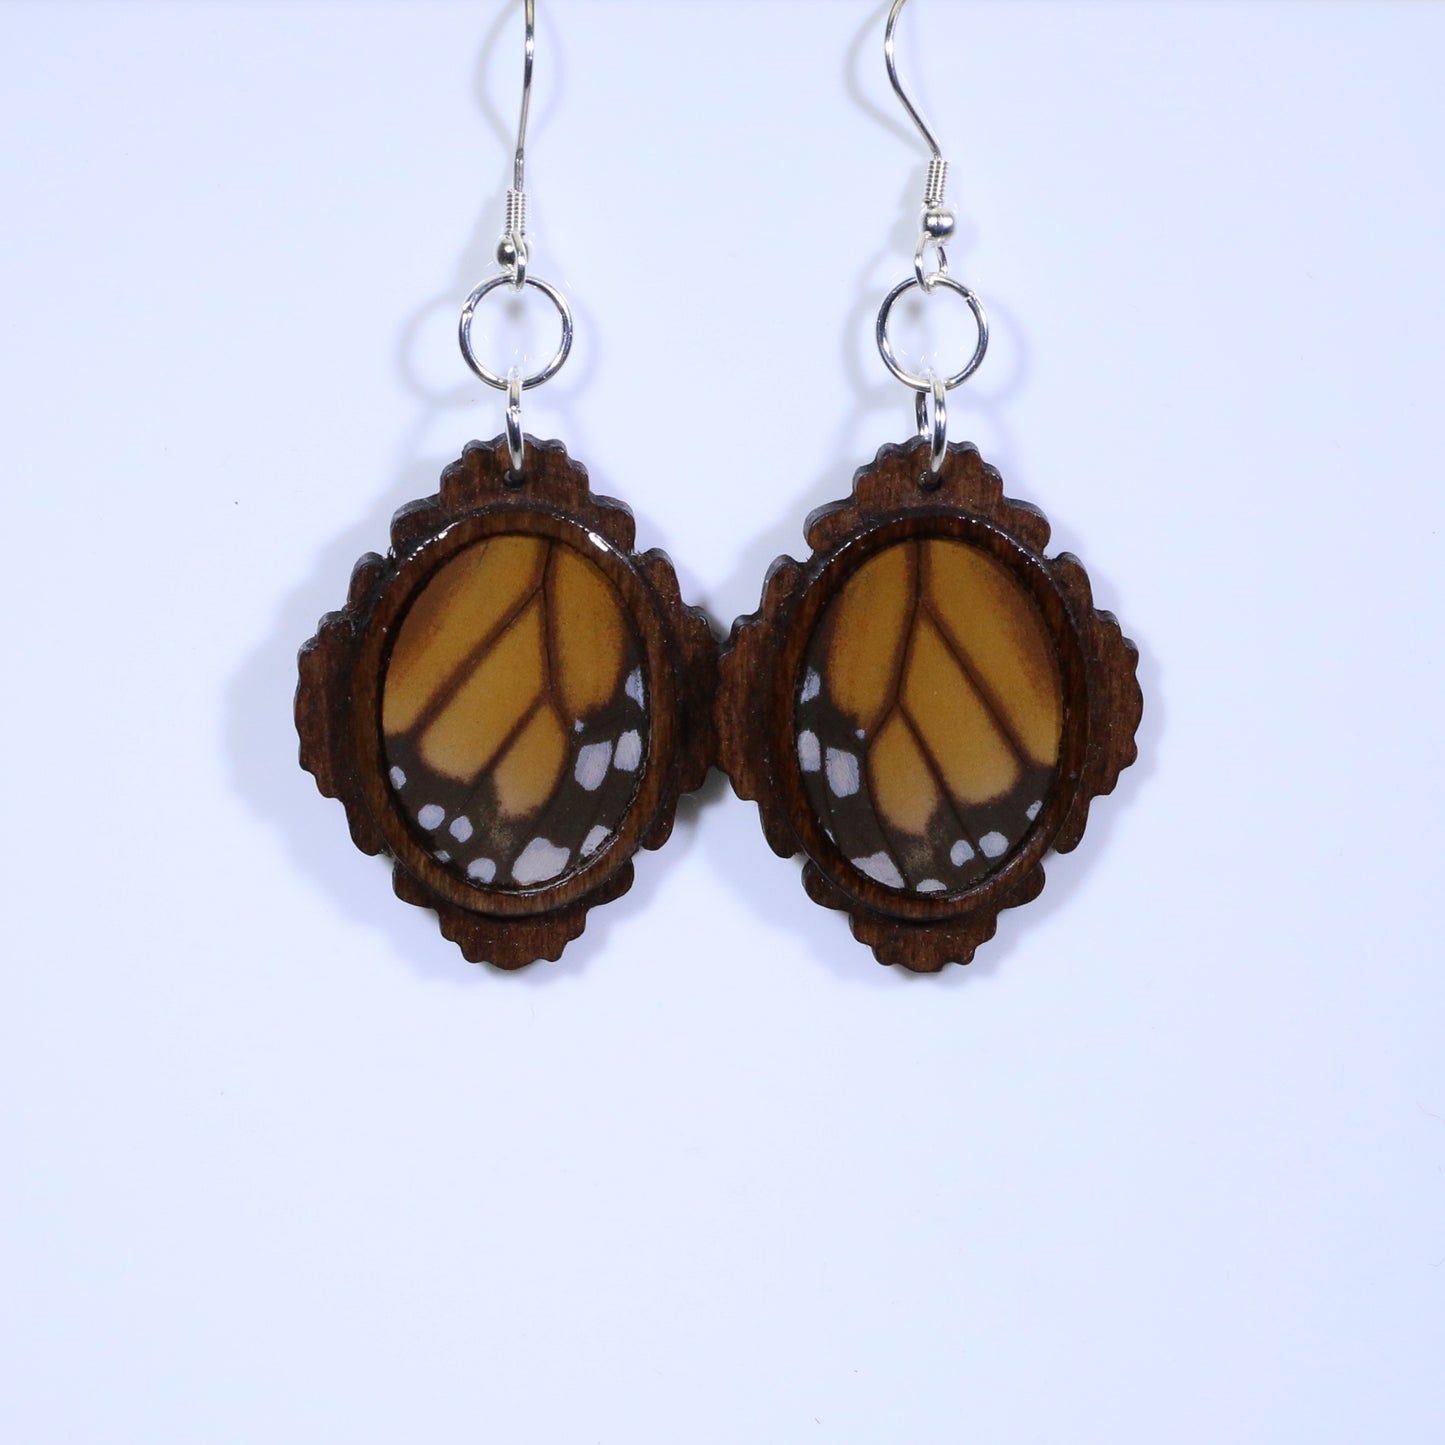 51754 - Real Butterfly Wing Jewelry - Earrings - Medium - Dark Wood - Oval - Filigree - Monarch